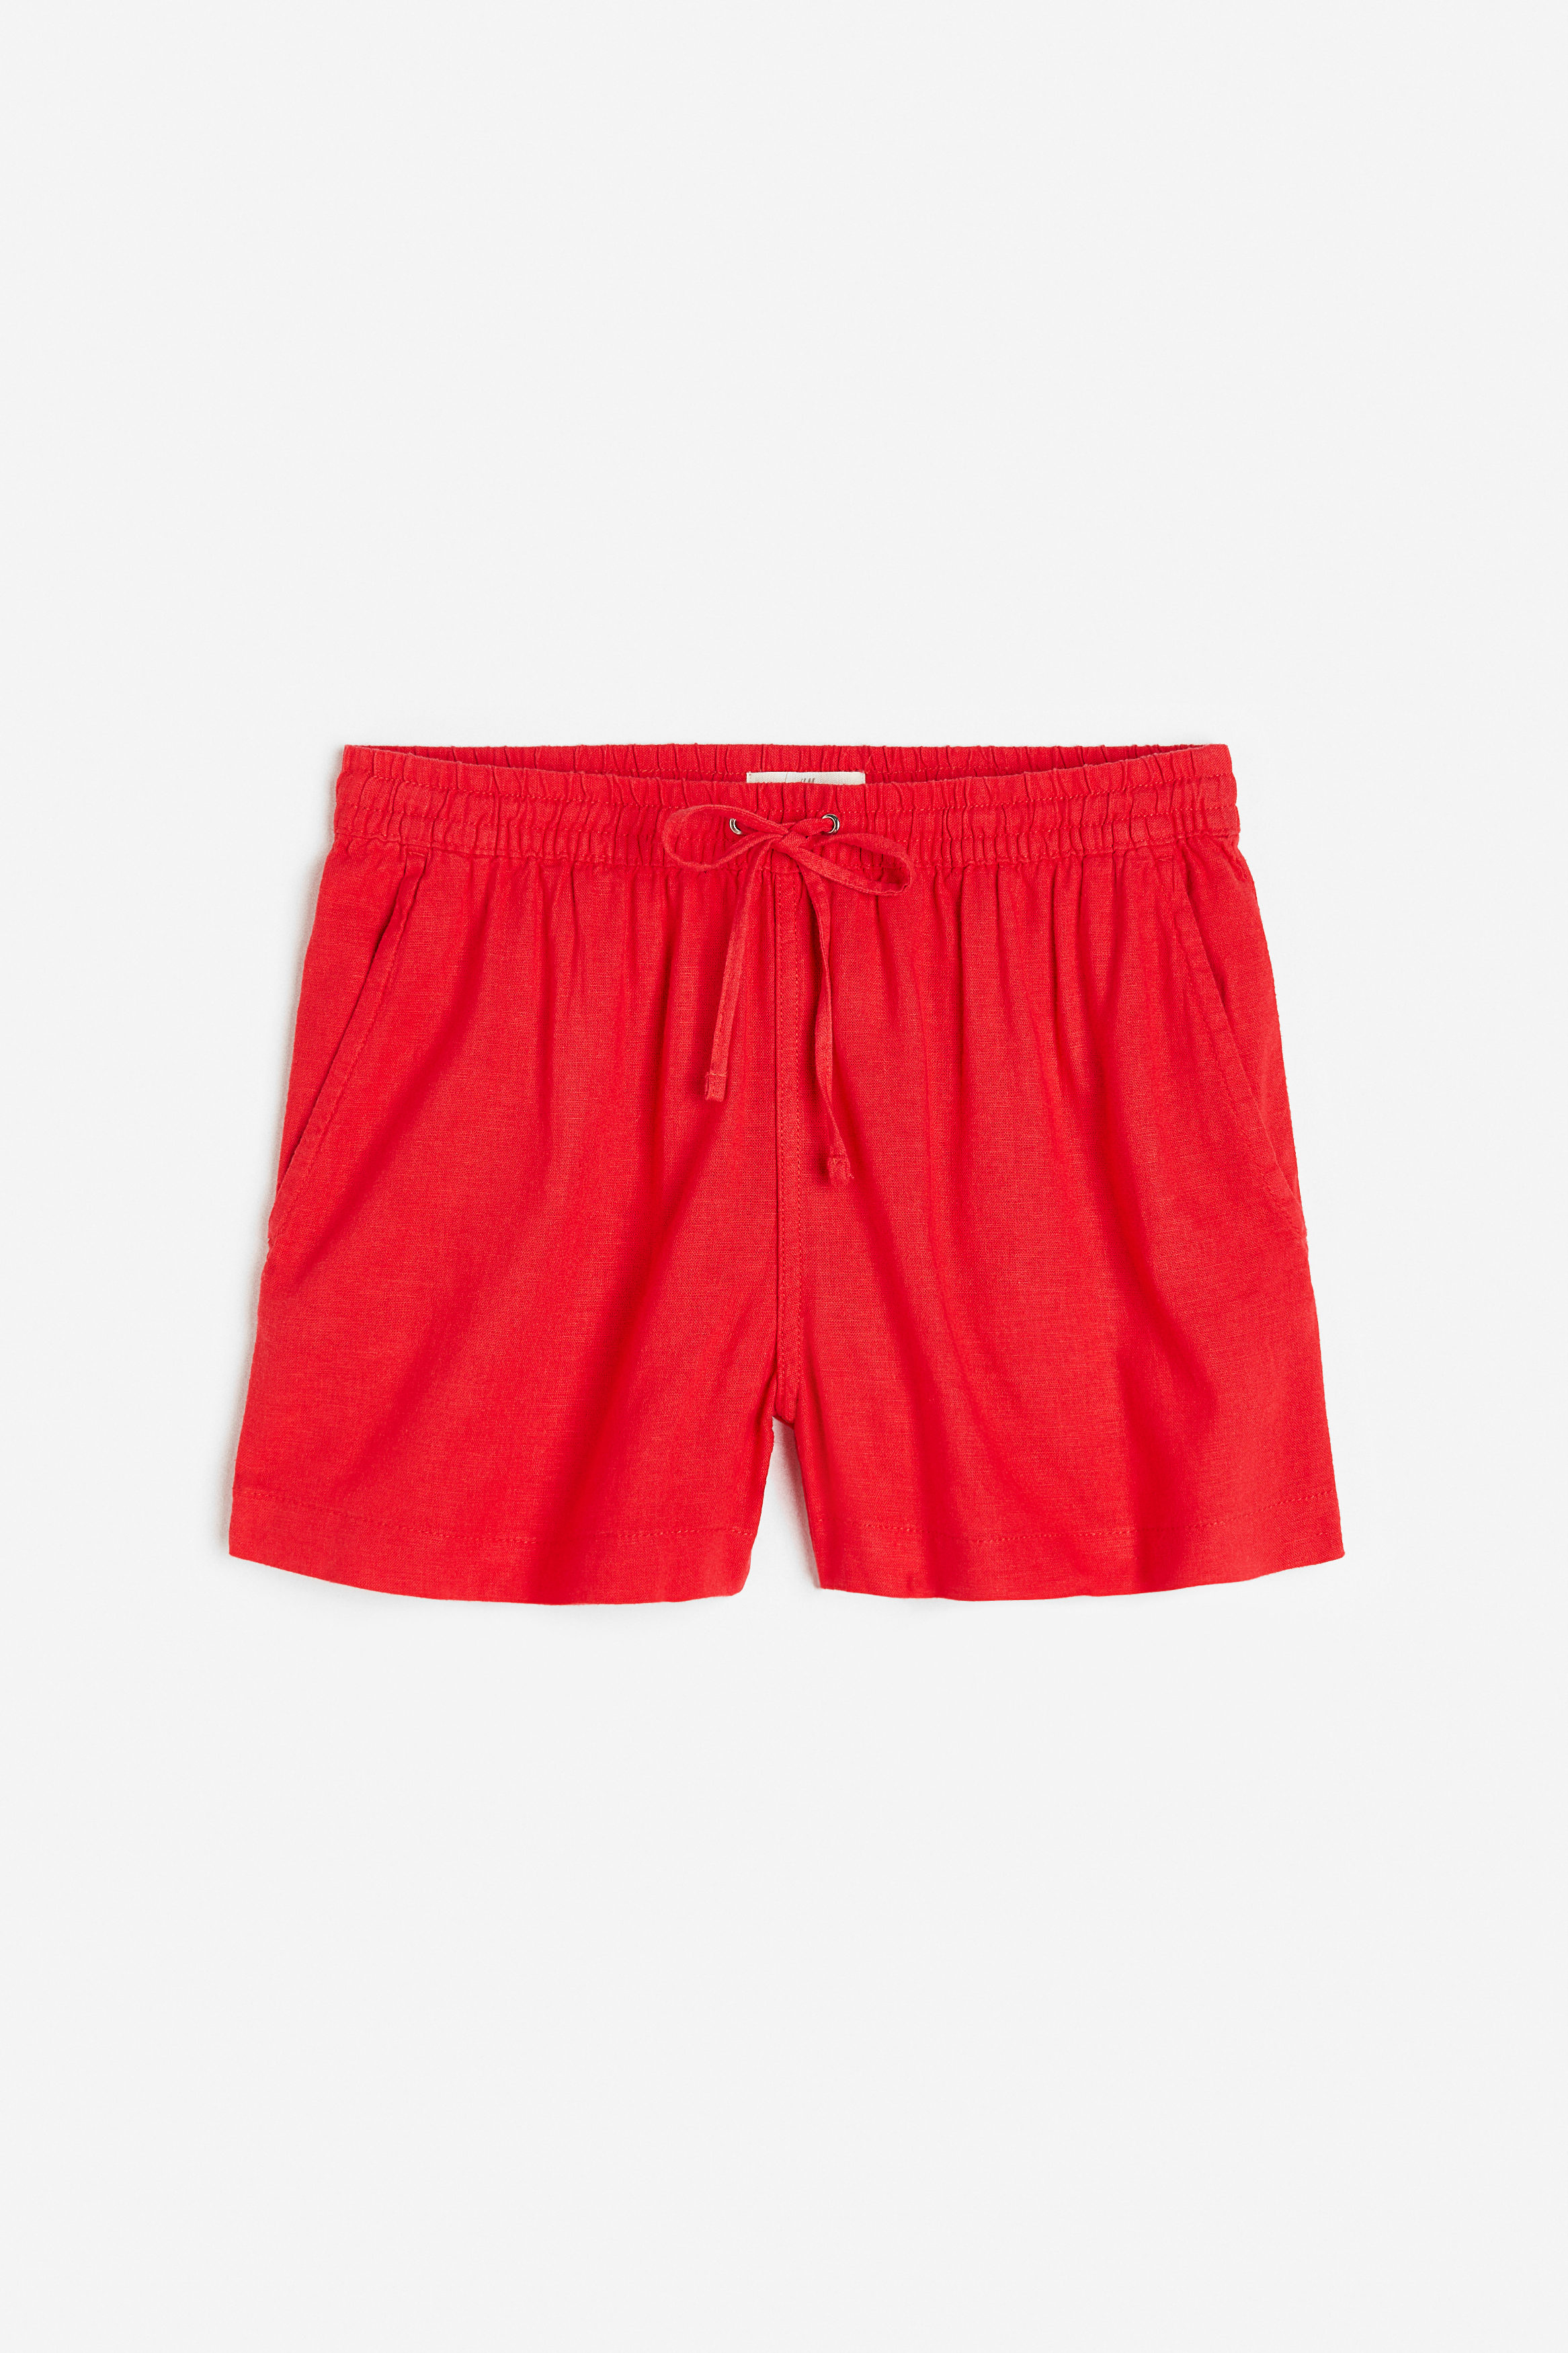 H&M Shorts I Hørblanding Rød. Farve: Red størrelse XS